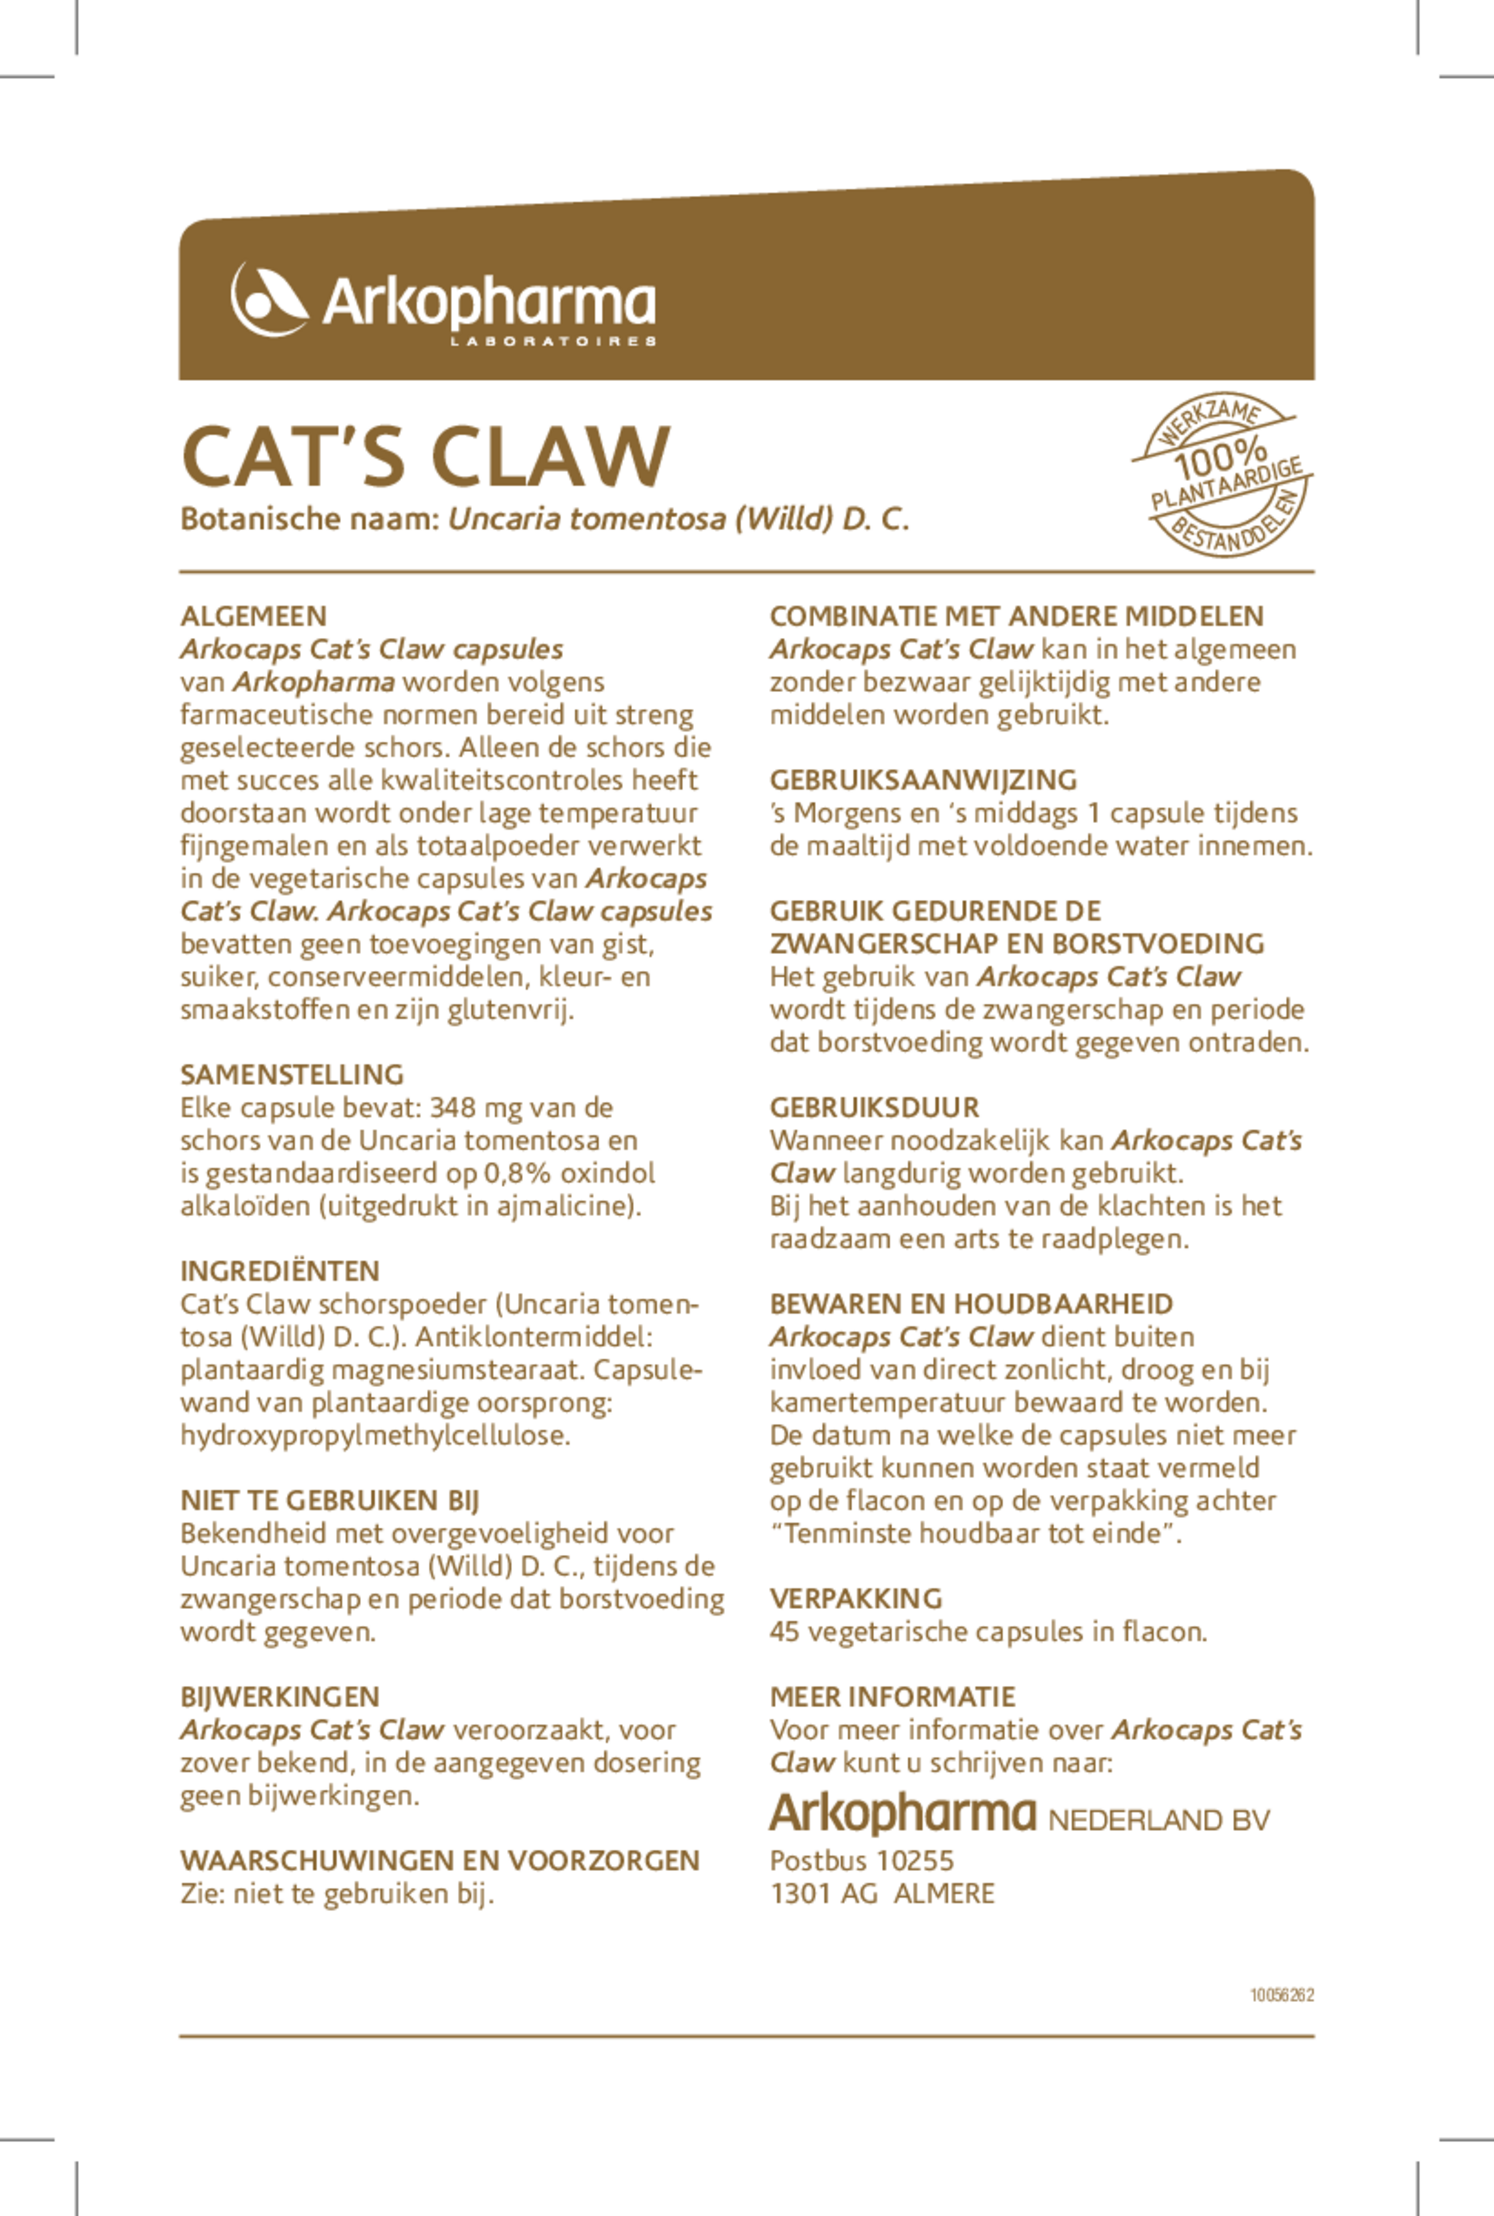 Cat's Claw Capsules afbeelding van document #1, gebruiksaanwijzing